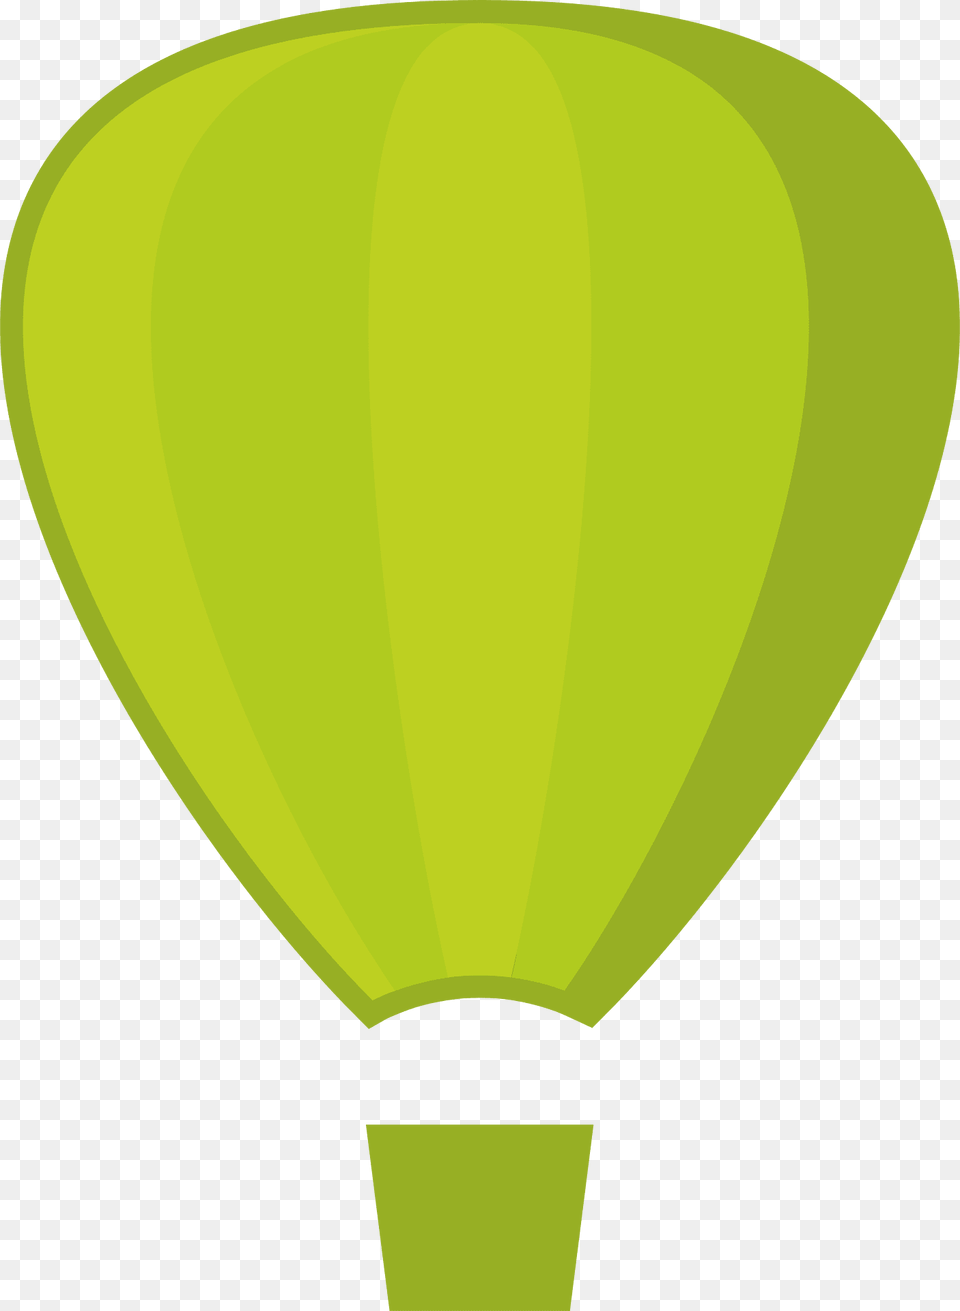 Balloons Clipart, Balloon, Aircraft, Hot Air Balloon, Transportation Png Image